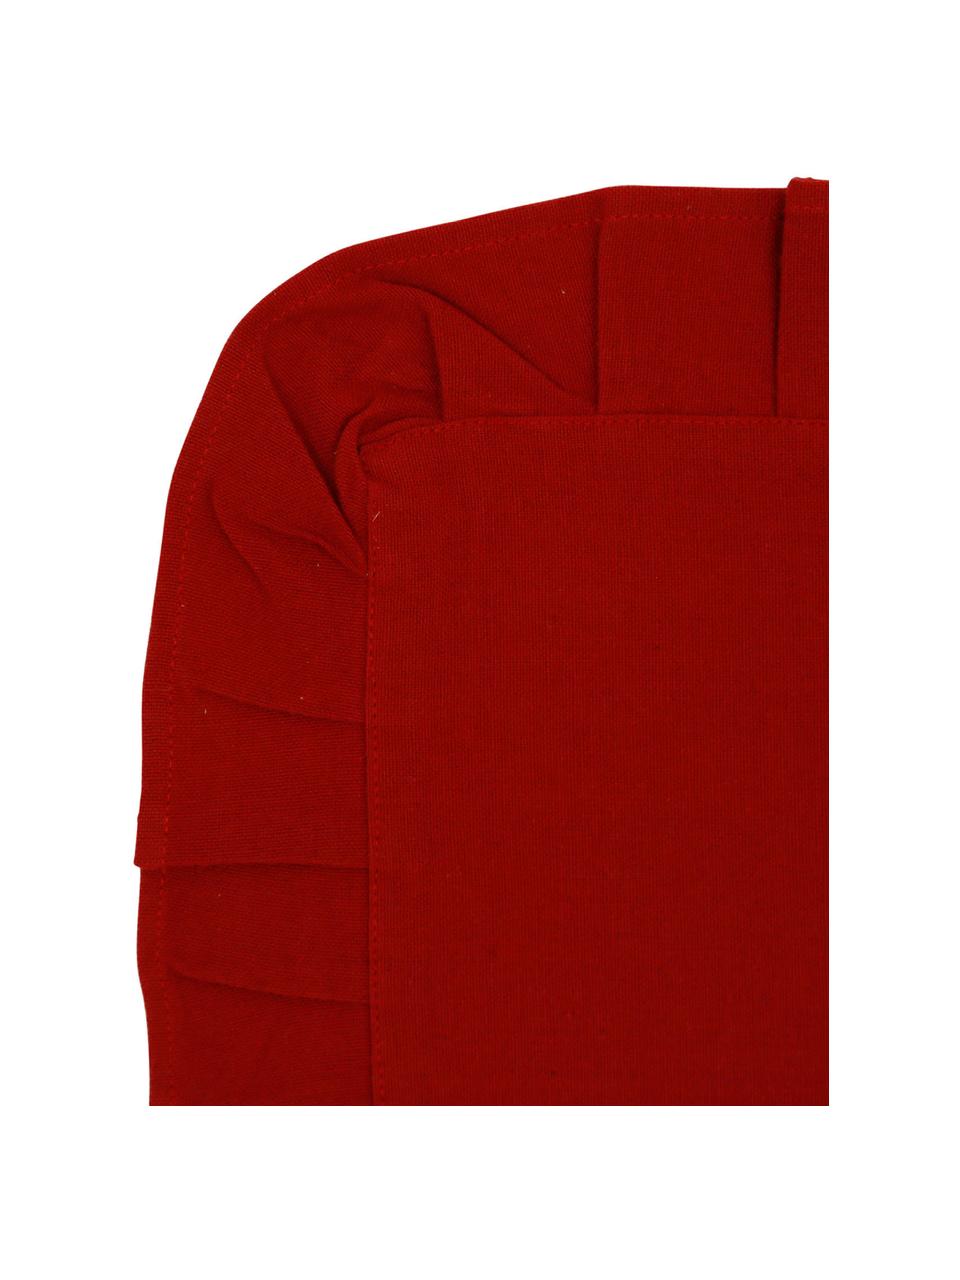 Podkładka z falbanką Chambray, 2 szt., 100% bawełna, Czerwony, S 30 x D 45 cm